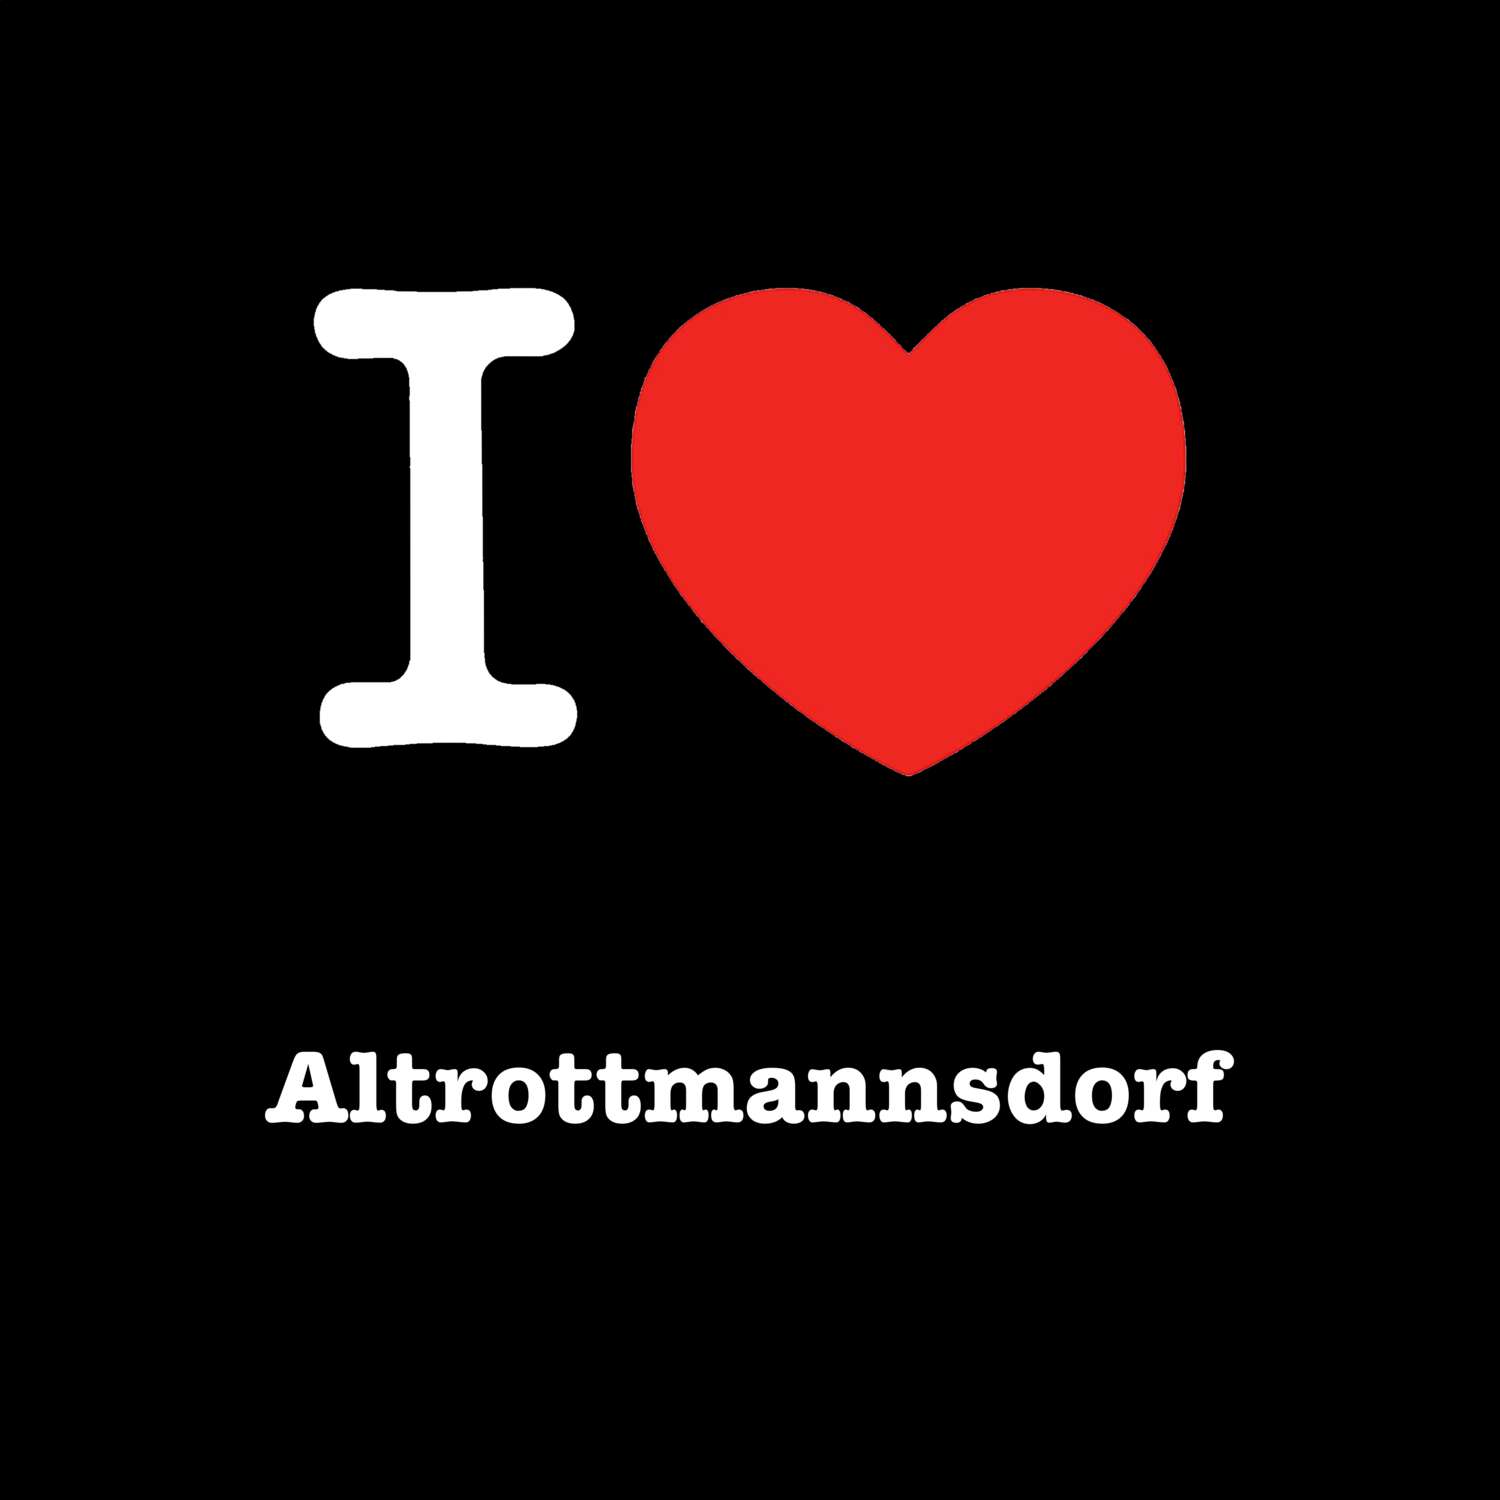 Altrottmannsdorf T-Shirt »I love«